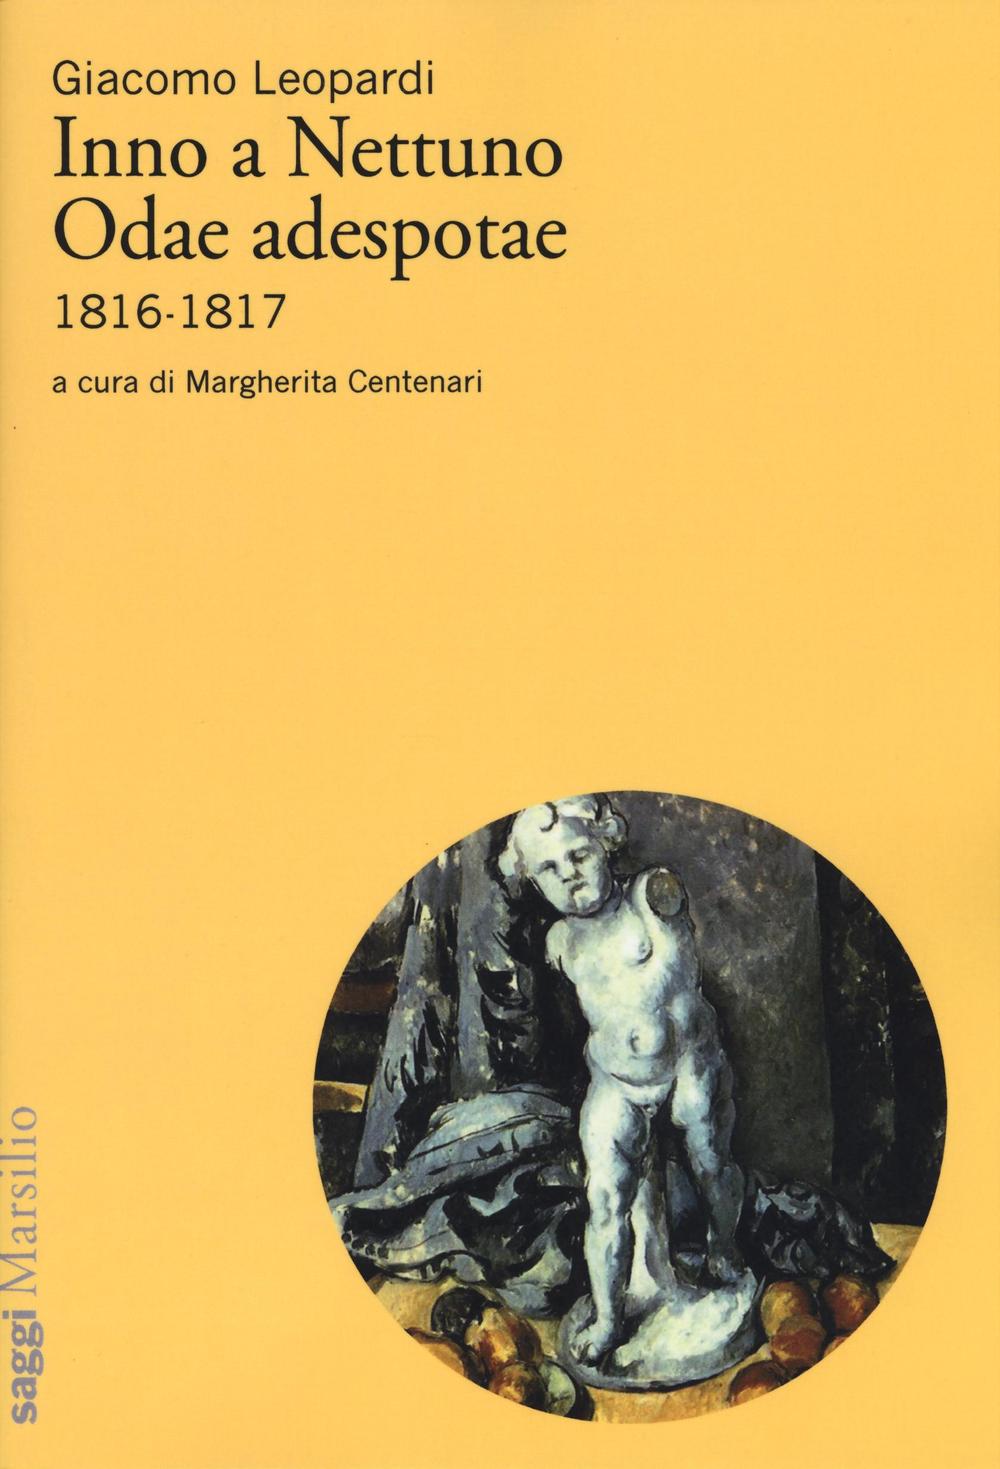 Inno a Nettuno-Odae adespotae (1816-1817)